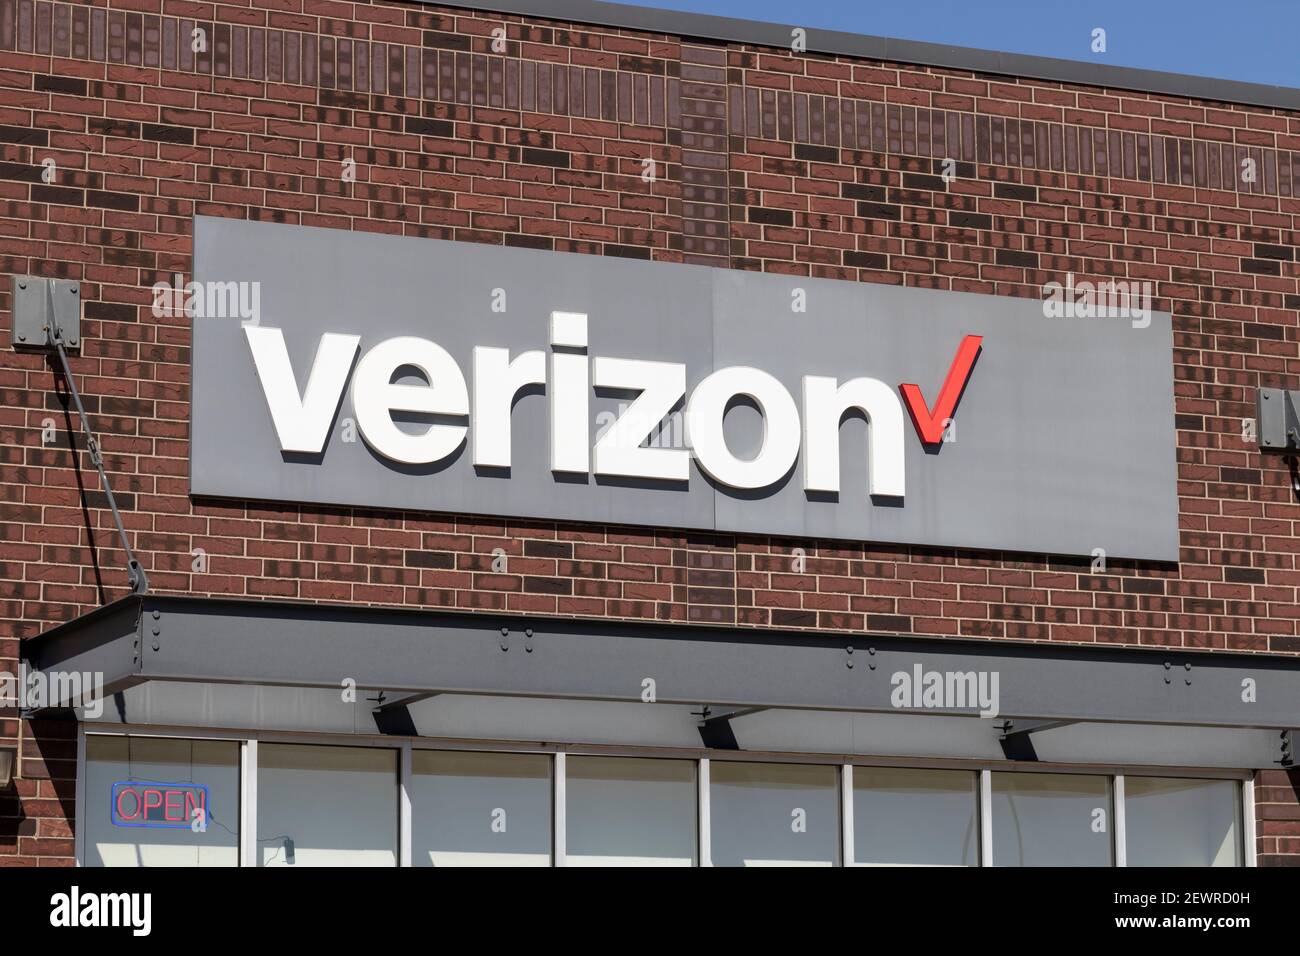 Indianapolis - Circa März 2021: Verizon Wireless Retail Location. Verizon liefert drahtlose Glasfaserverbindungen mit hoher Kapazität und 5G-Kommunikation. Stockfoto